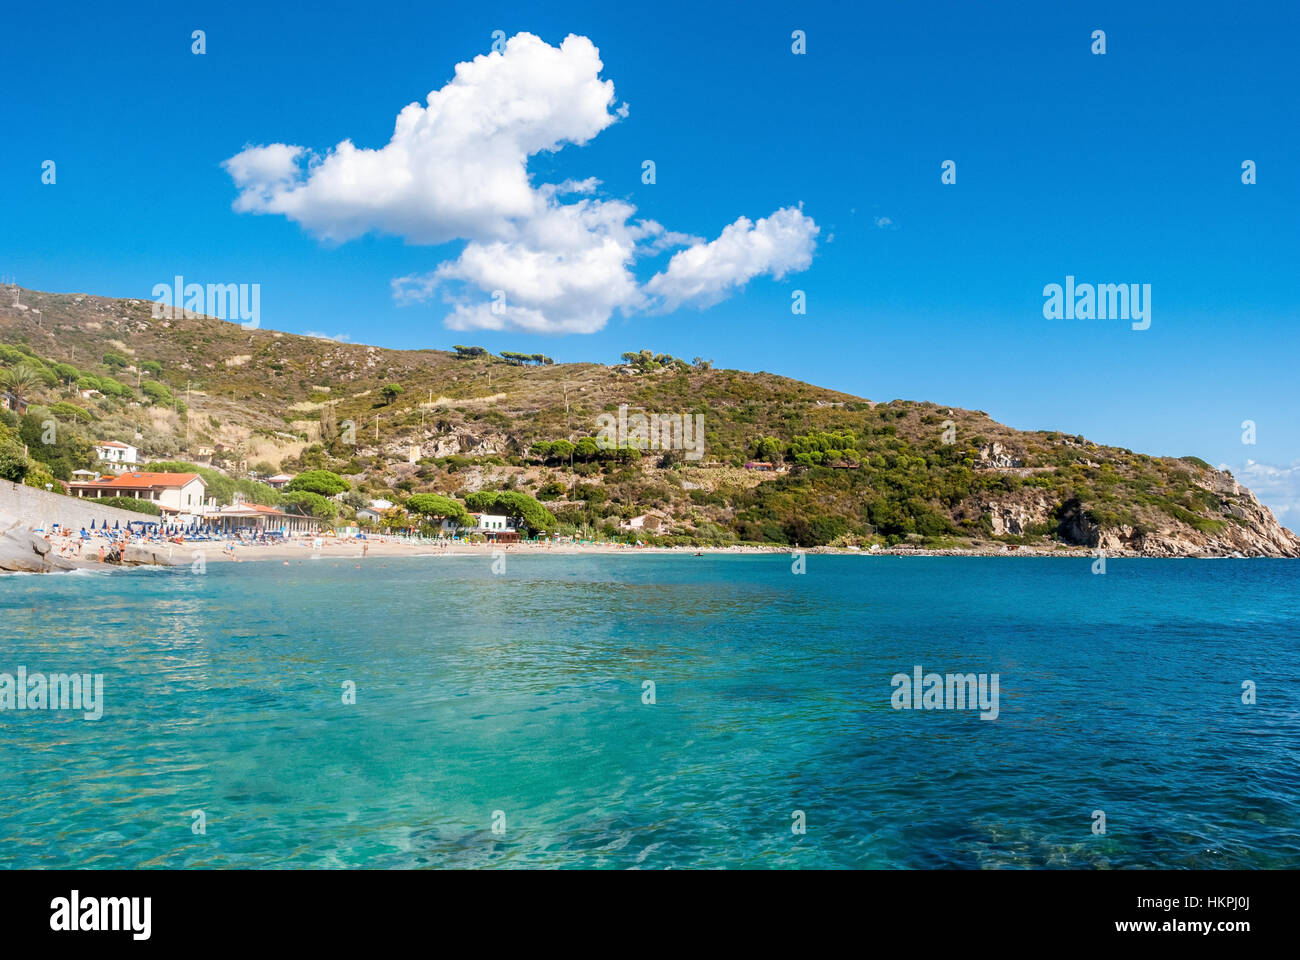 Cavoli, Isola d'Elba, Italy Stock Photo: 132648114 - Alamy